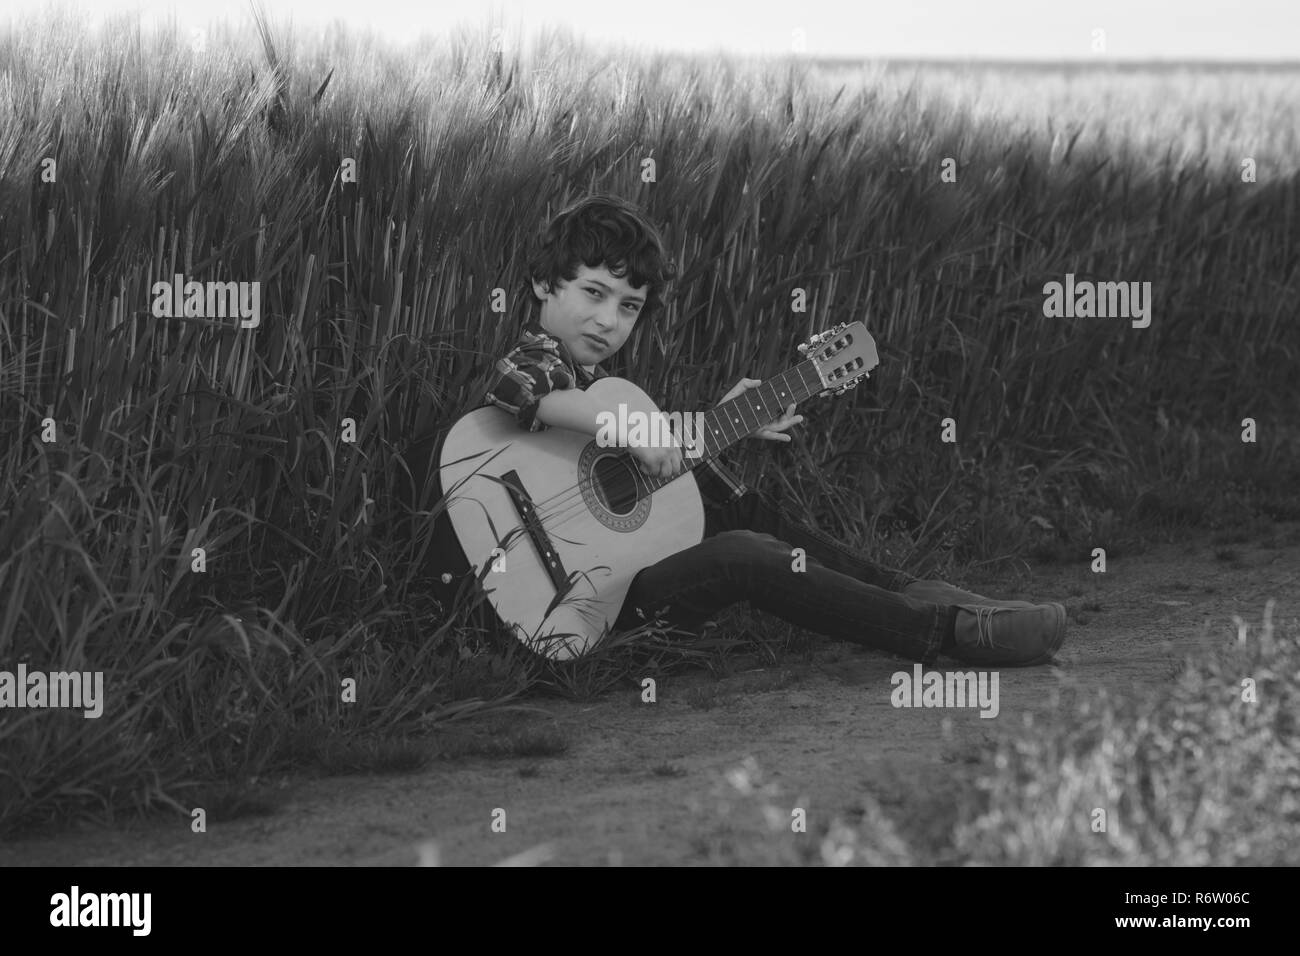 Un garçon en jeans et d'une chemise est assis dans le champ avec une guitare. Noir et blanc. Stylisation mat. Banque D'Images